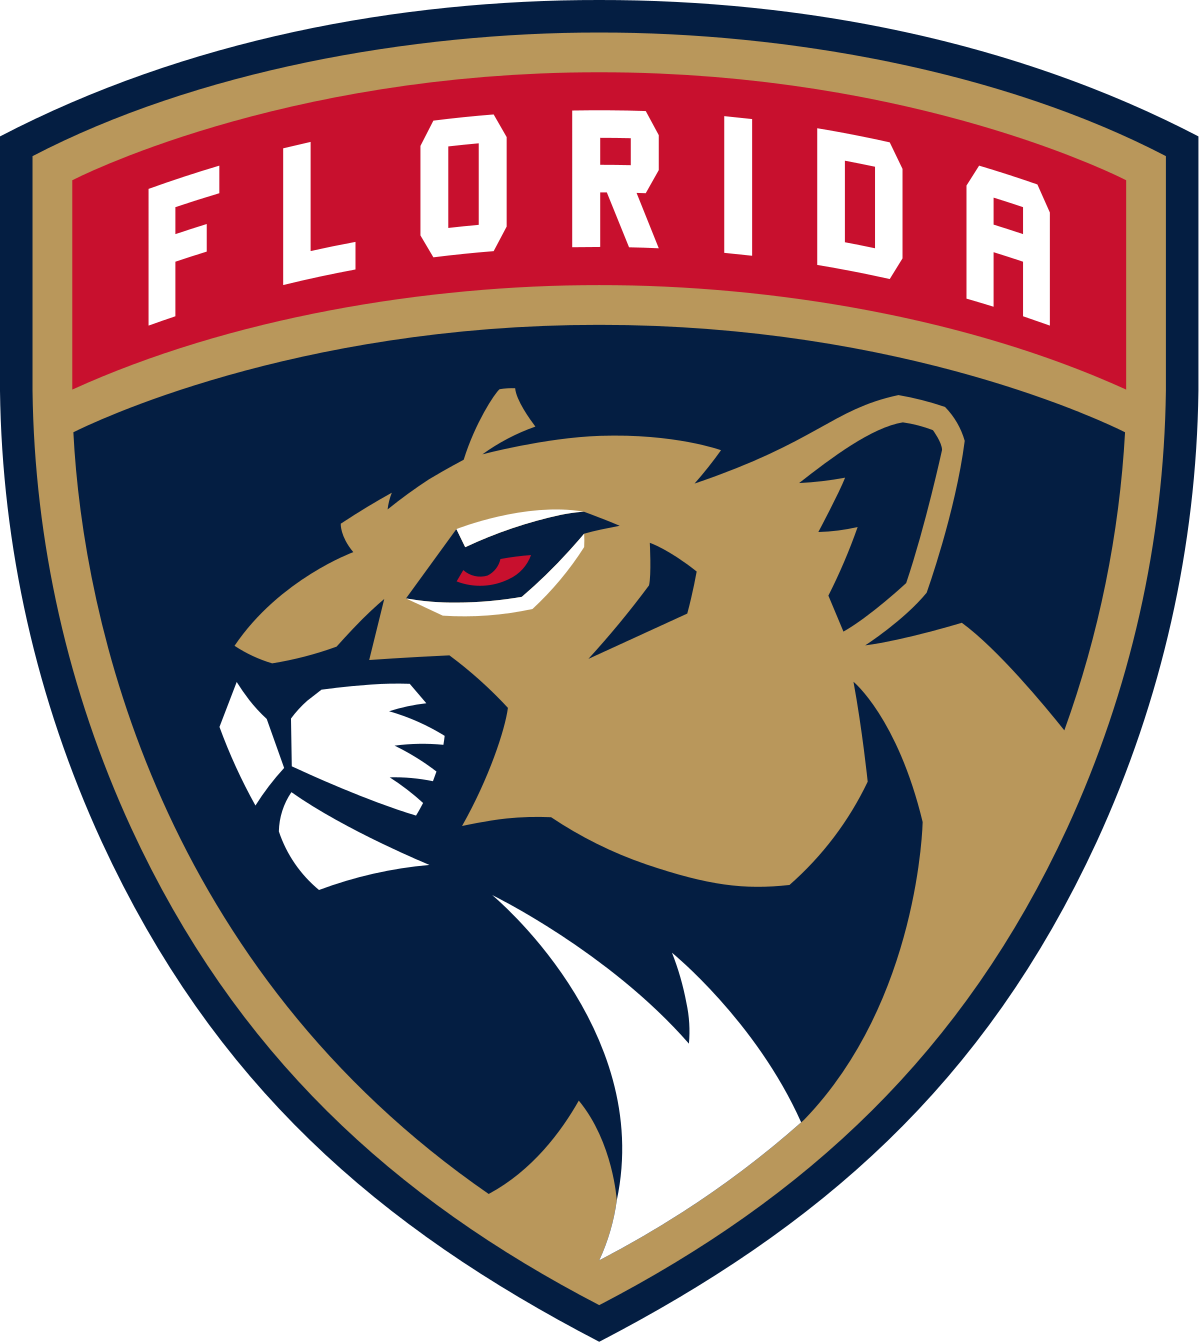 Florida Panthers - Wikipedia